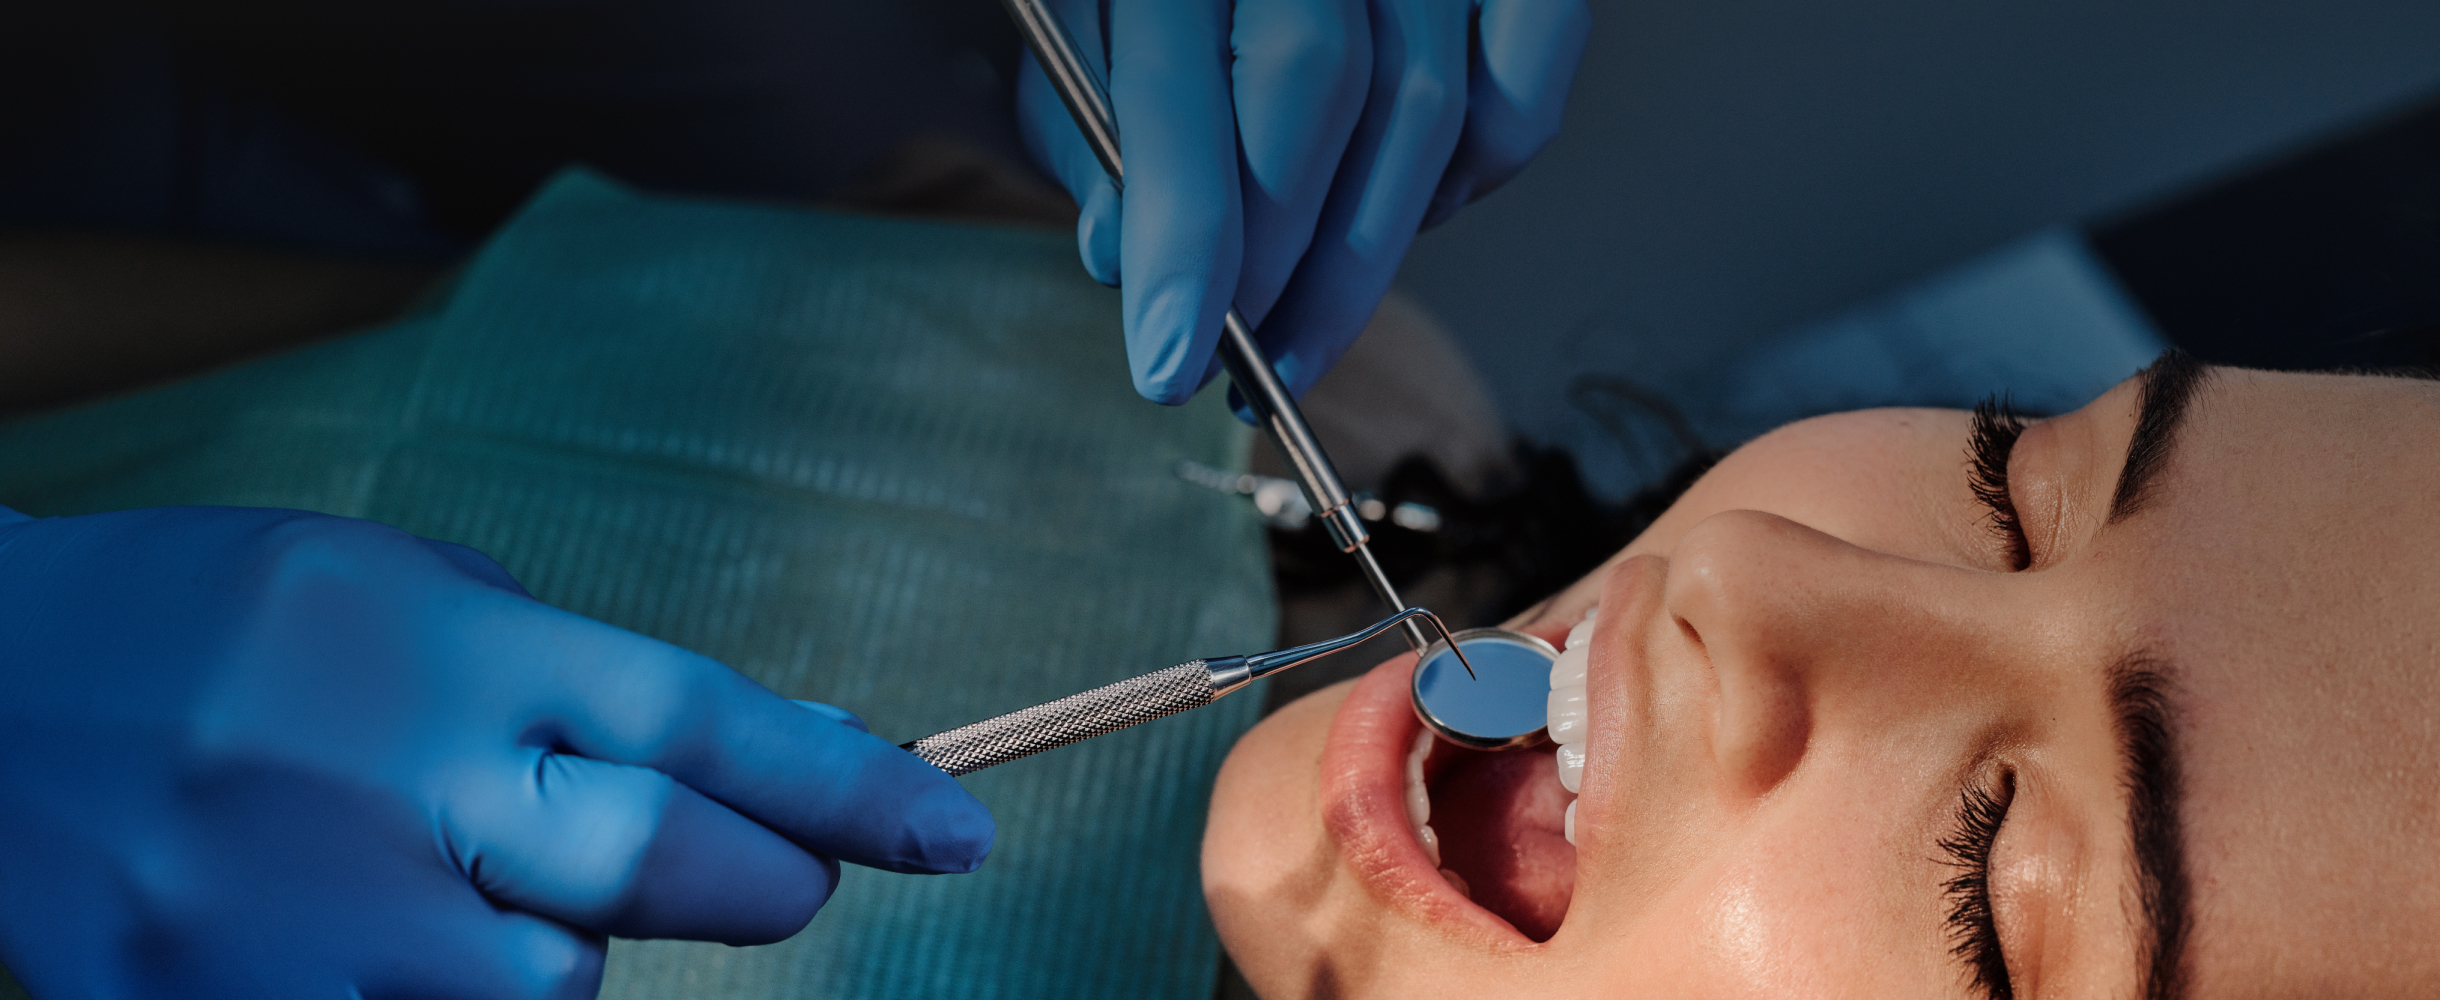 «Пришлось отвыкнуть кусать и привыкнуть к боли»: 8 шокирующих историй о лечении зубов